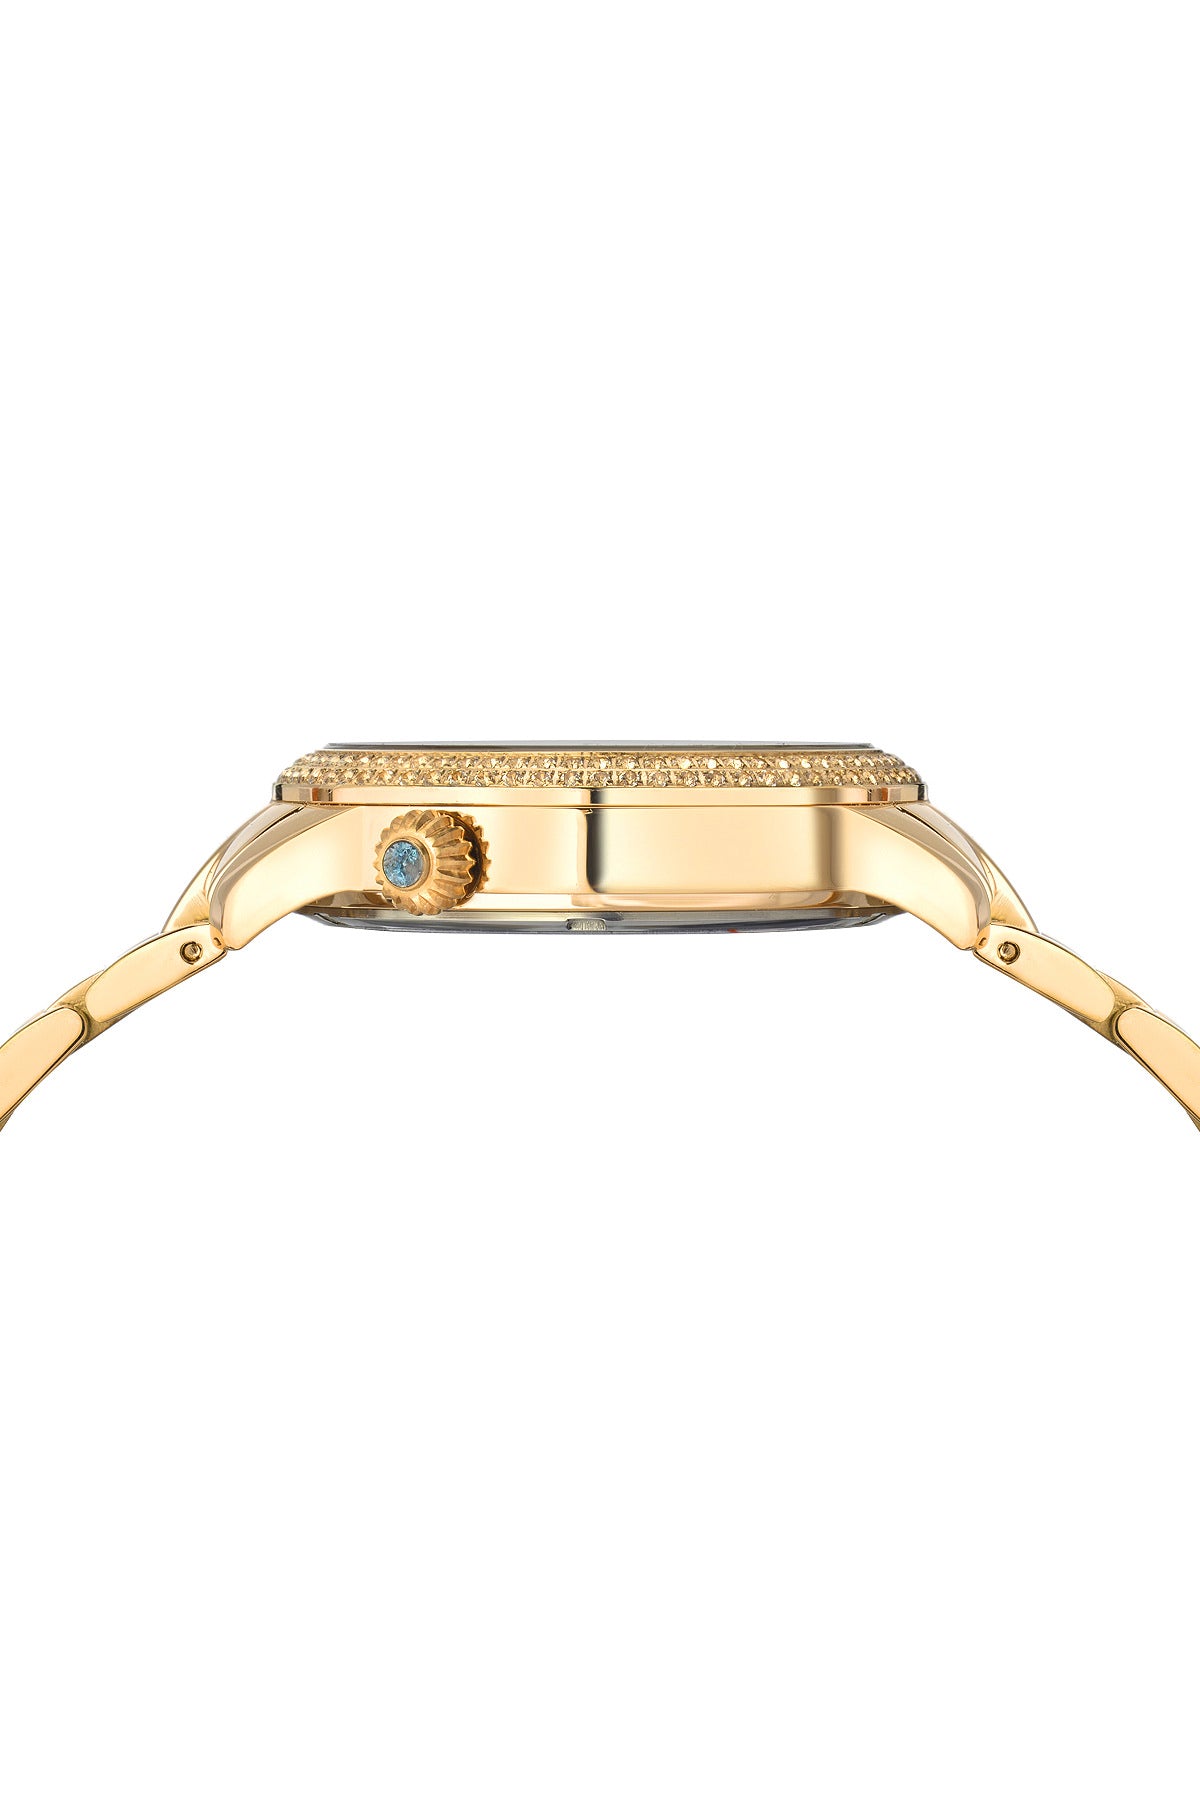 Porsamo Bleu Evelyn luxury topaz women's stainless steel watch, gold, black 762BEVS